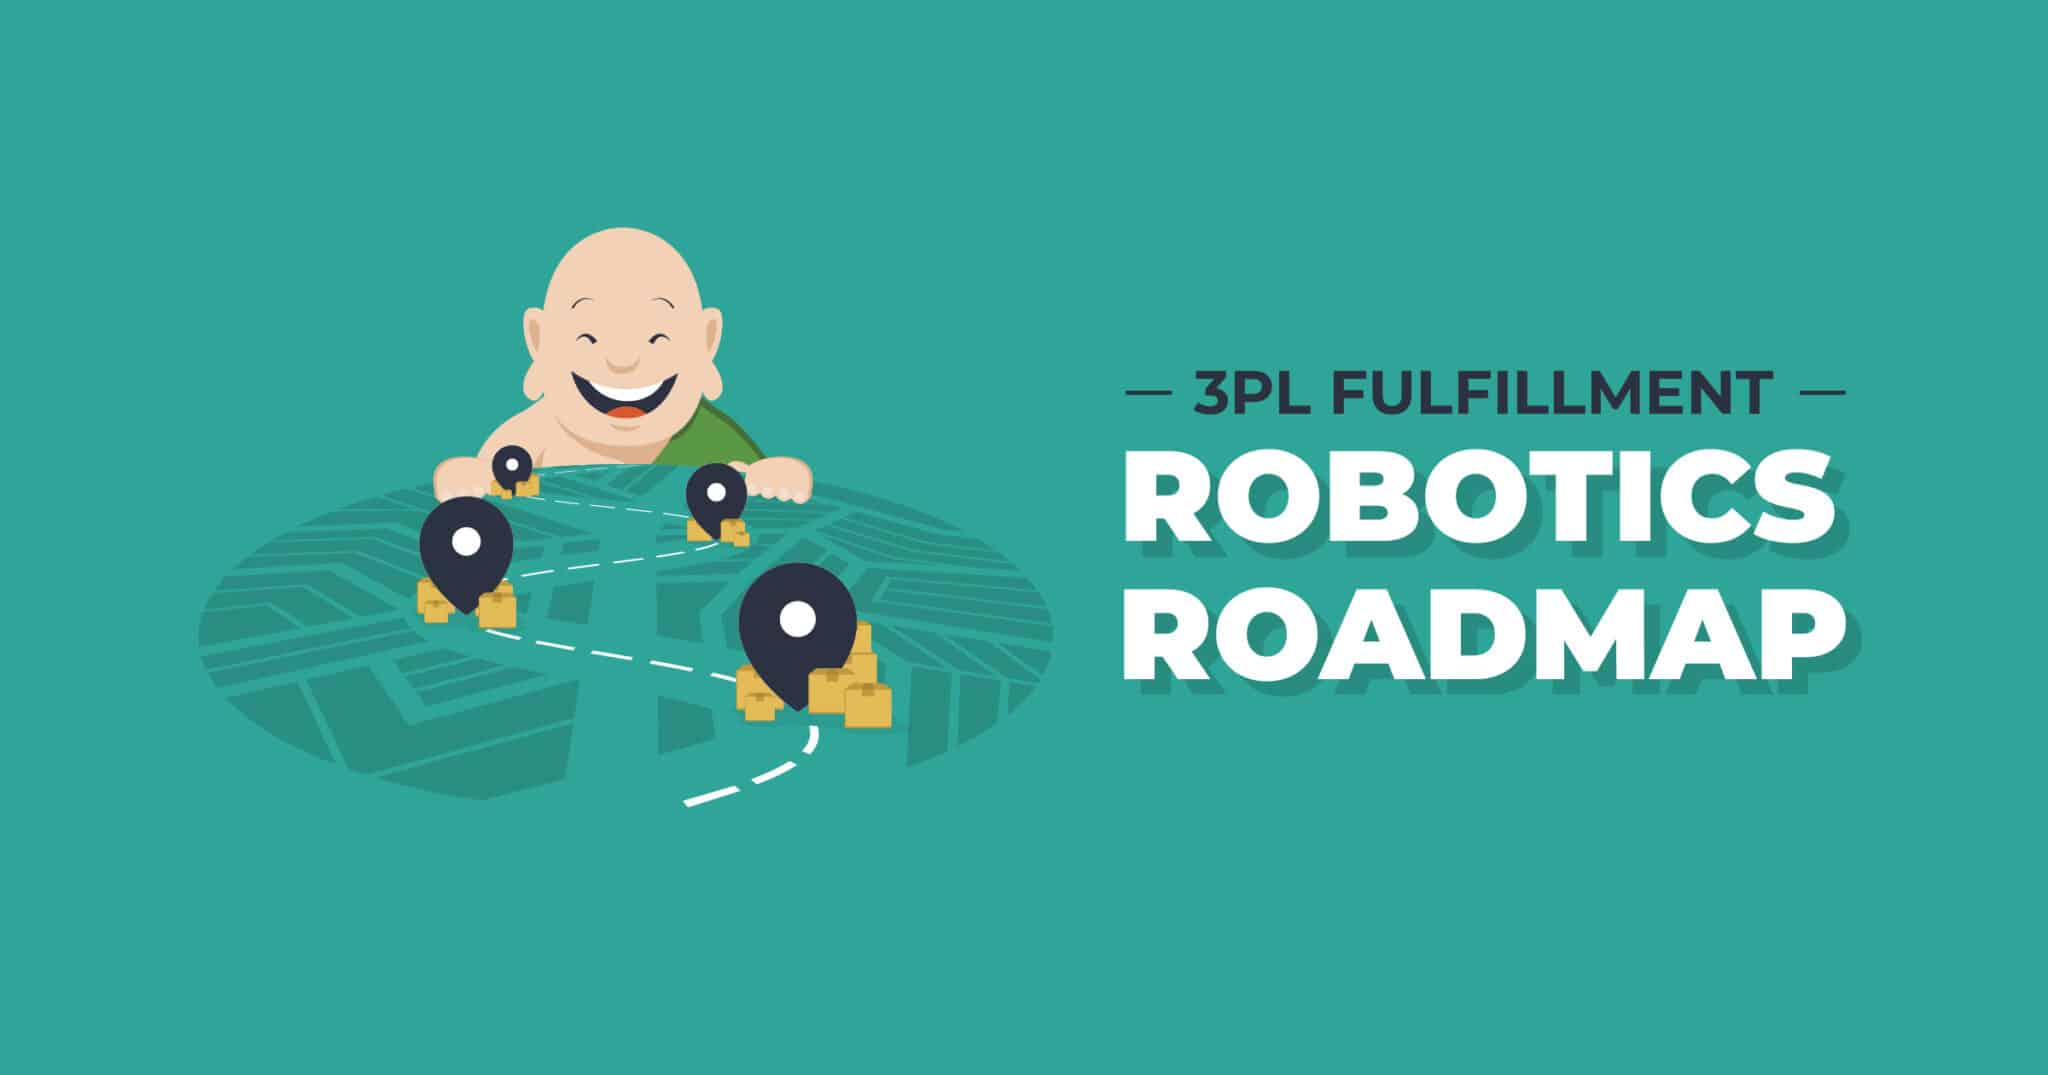 Fulfillment Robotics Roadmap